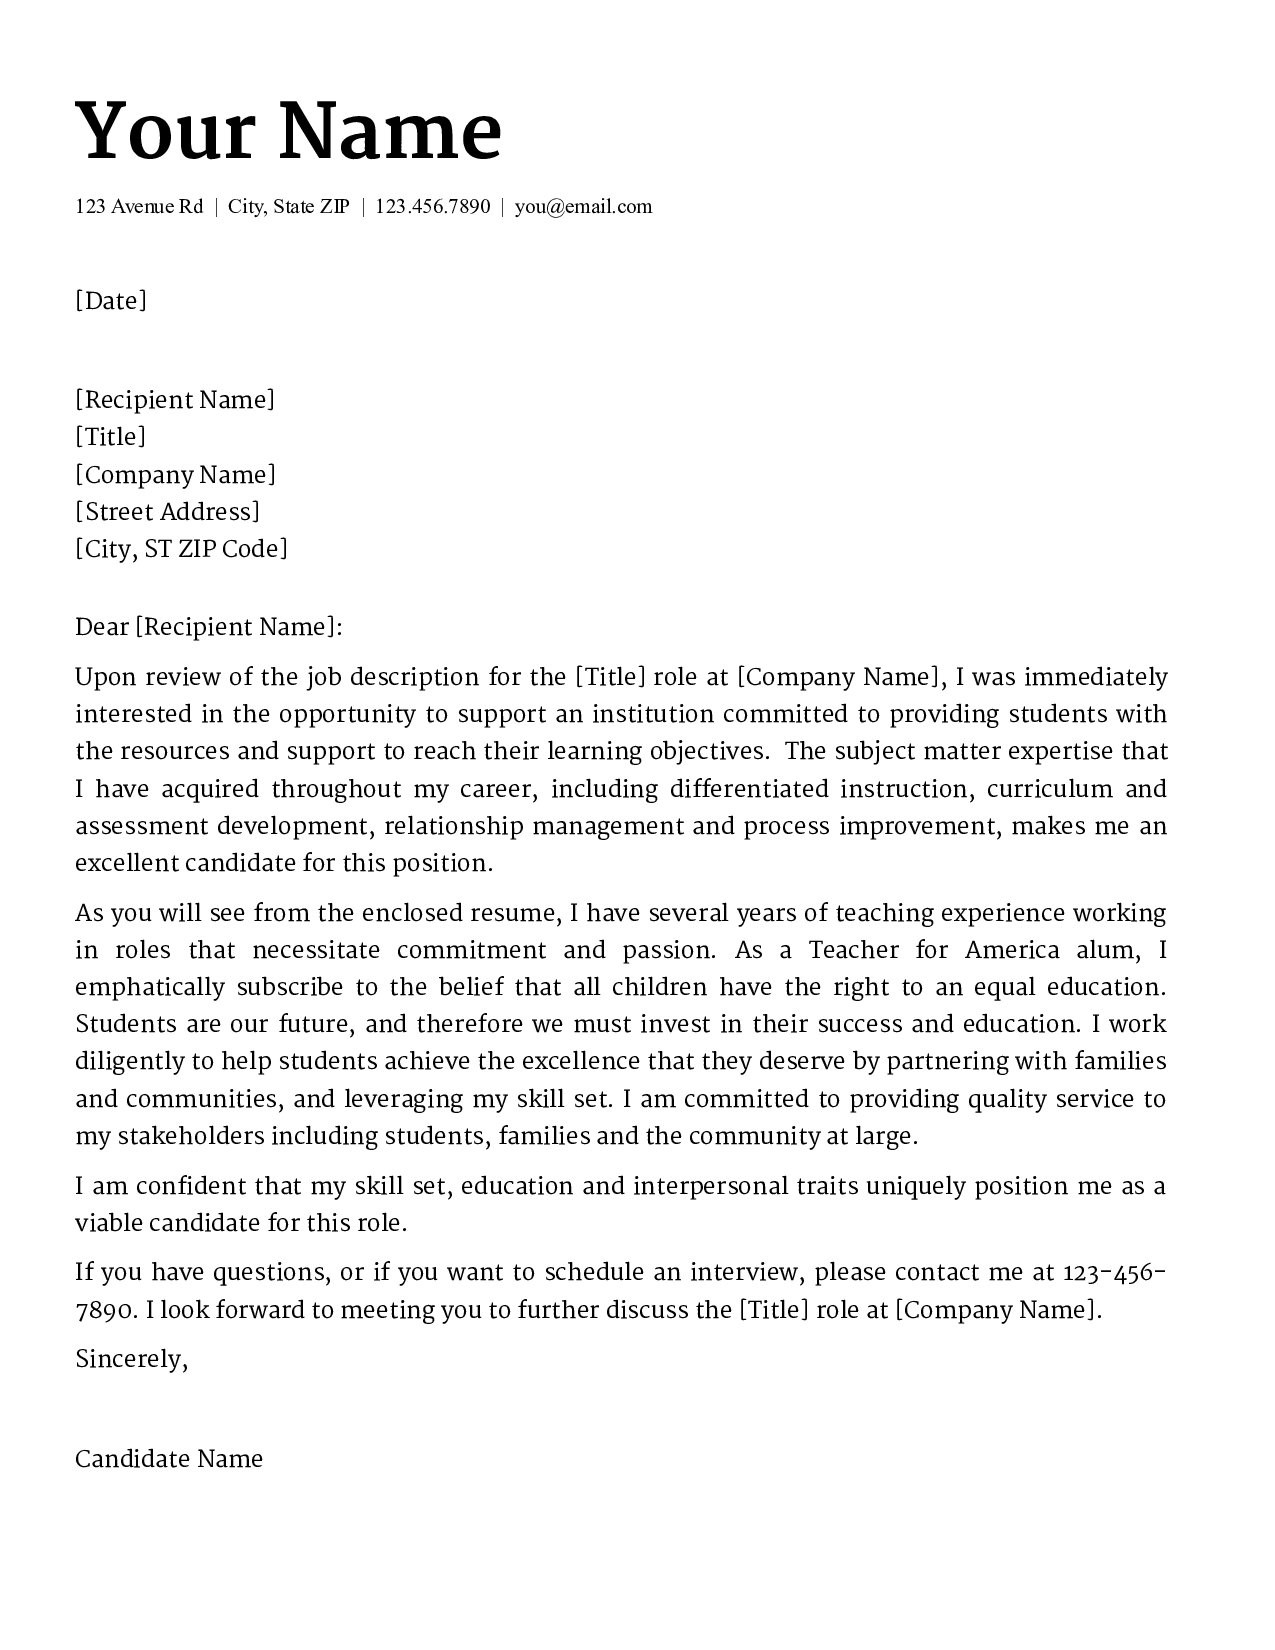 Teacher Cover Letter Template Teacher Cover Letter